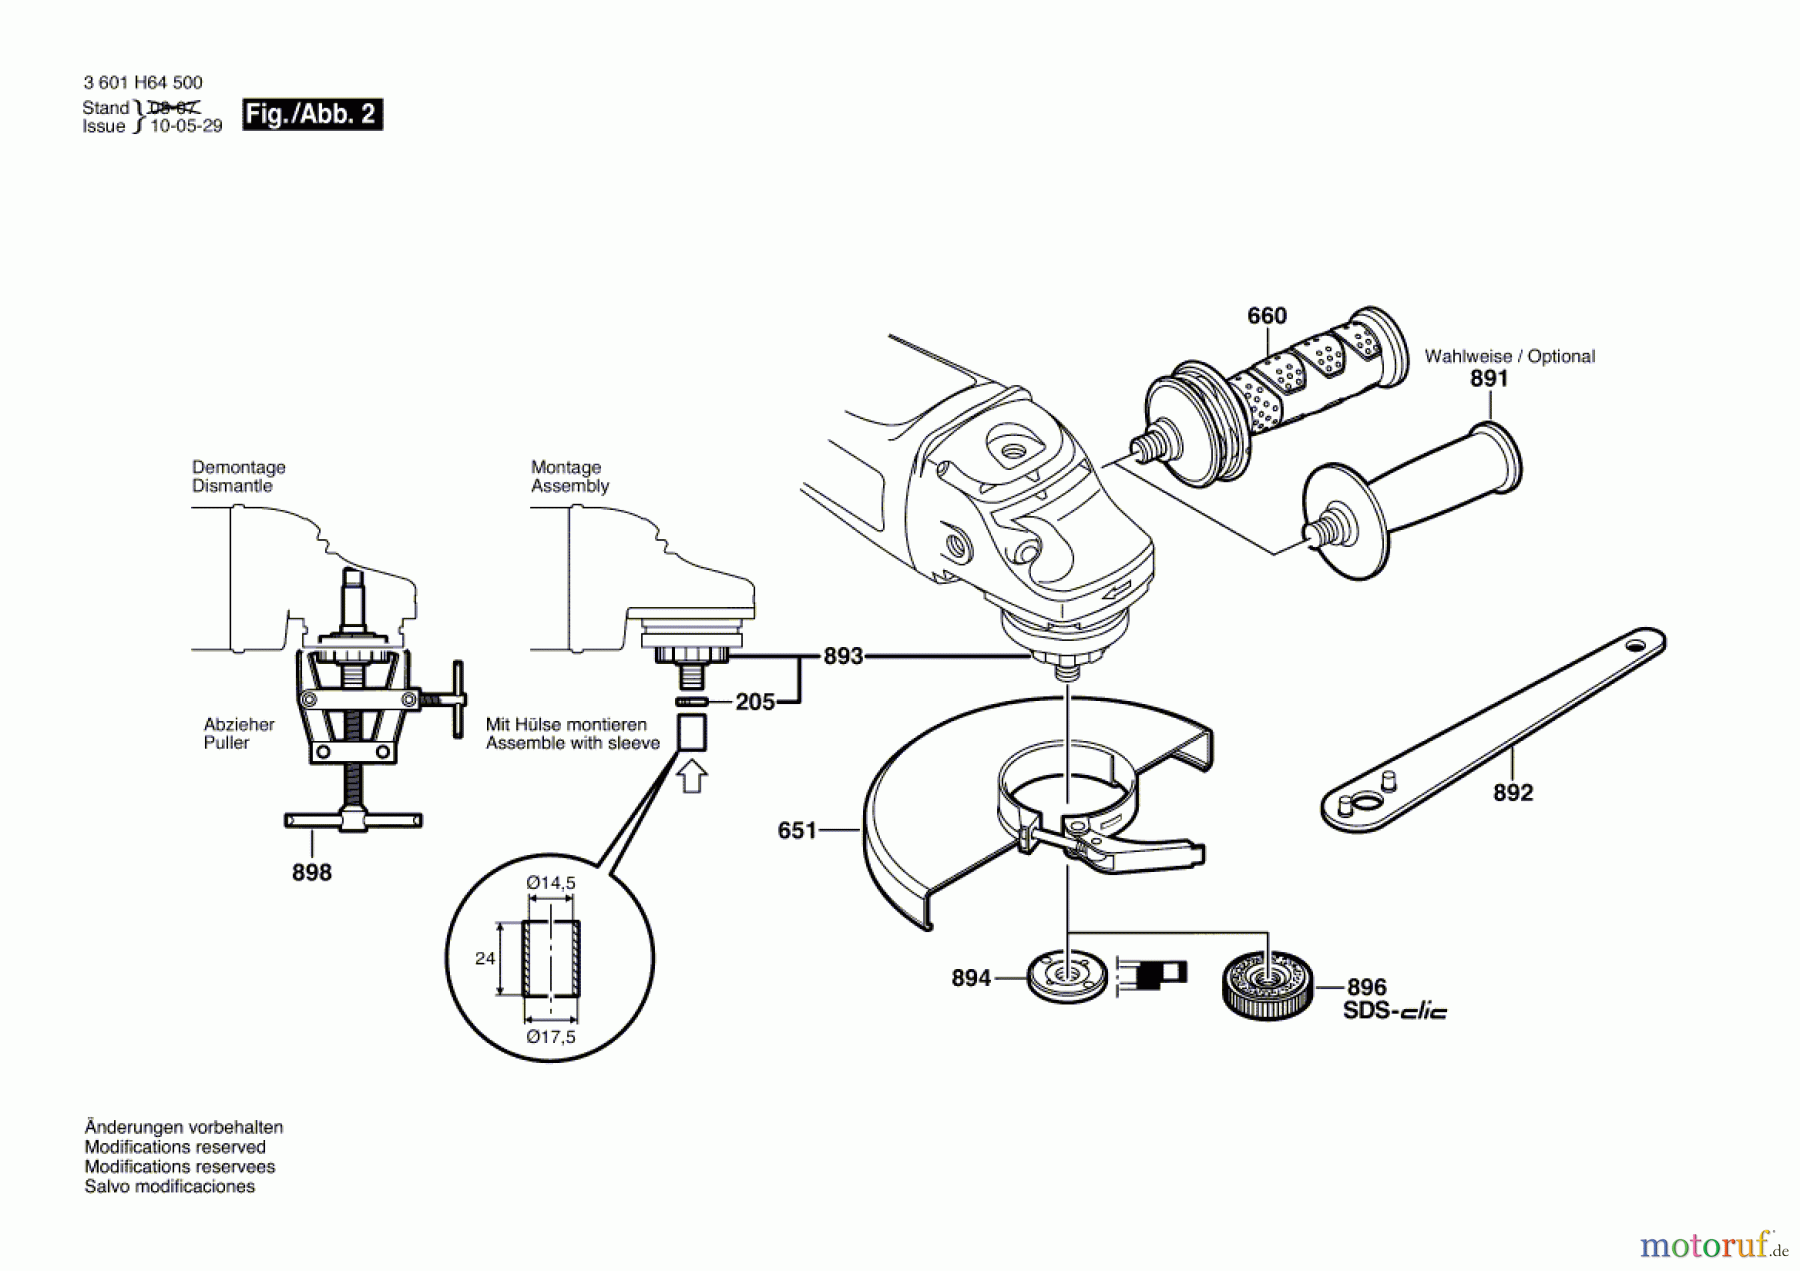  Bosch Werkzeug Winkelschleifer GWS 24-230 JVX Seite 2